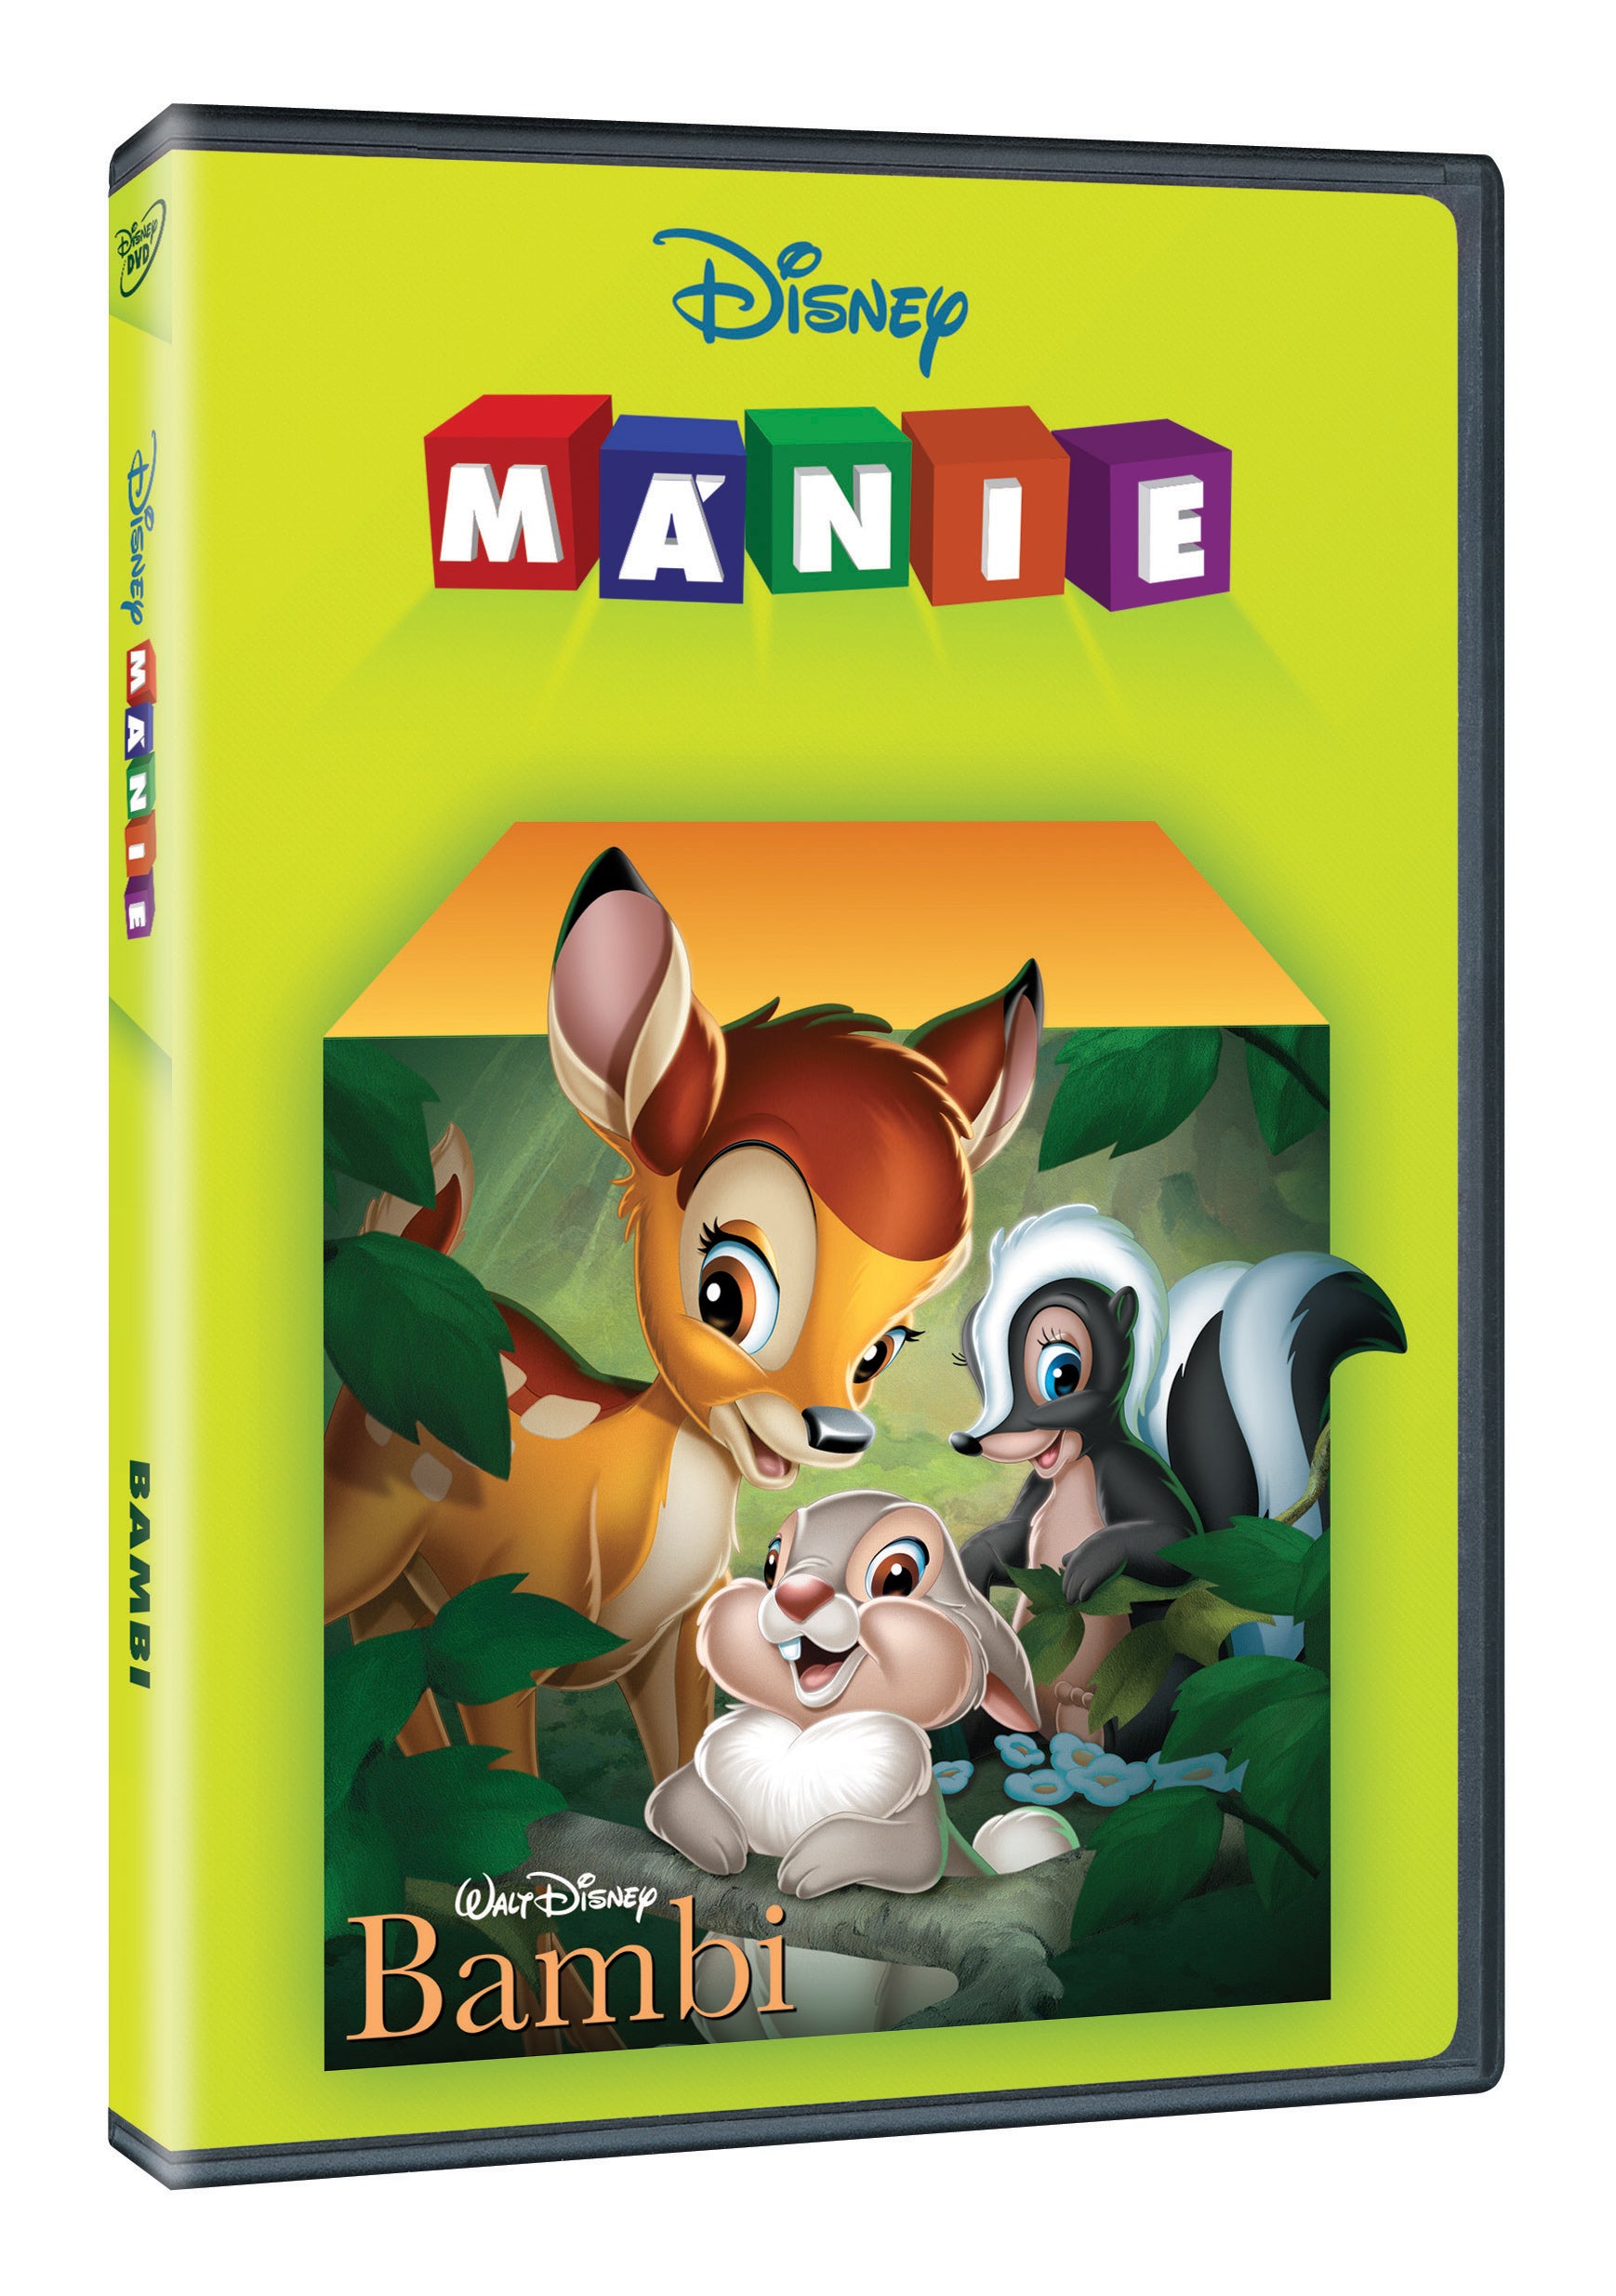 Bambi DE – Disney-Manie (Bambi DE)